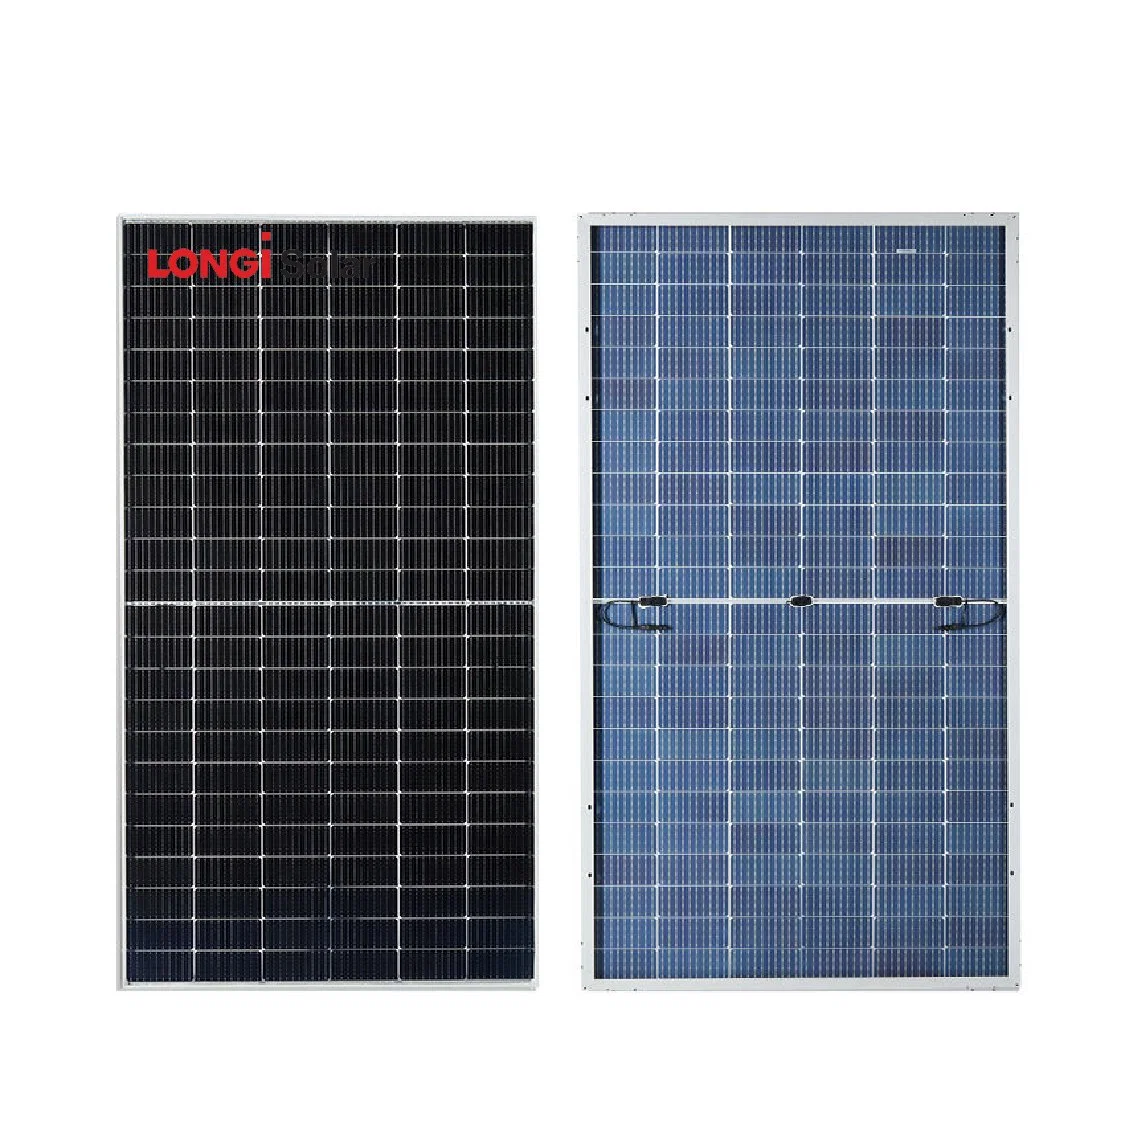 Les panneaux solaires longi Bificial PV Module Perc mono 530W 535W 540W 545w panneau solaire 550W l'énergie avec 25 ans de garantie